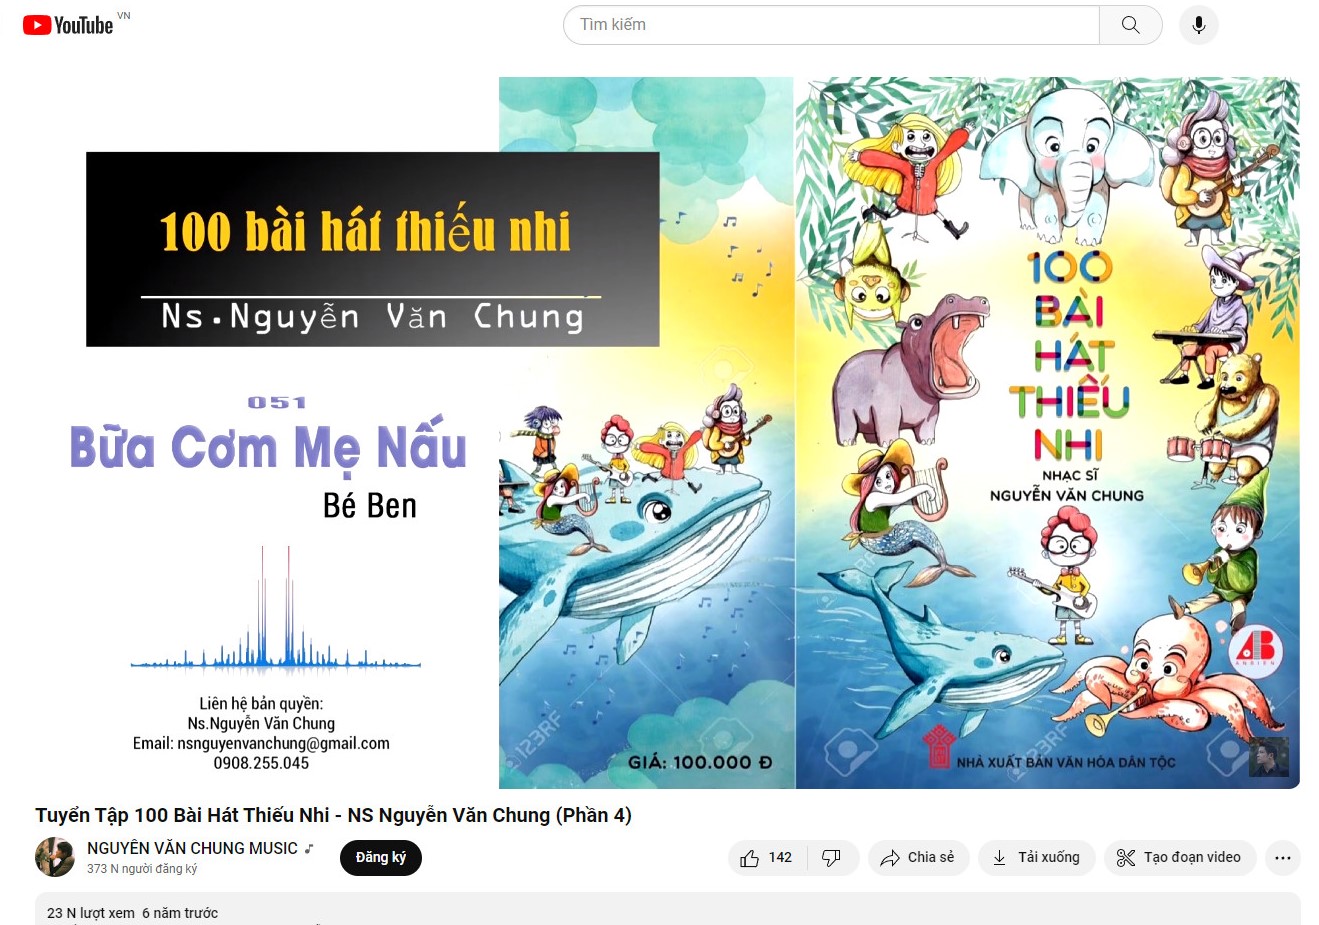 Album nhạc thiếu nhi của Nhạc sĩ Nguyễn Văn Chung 